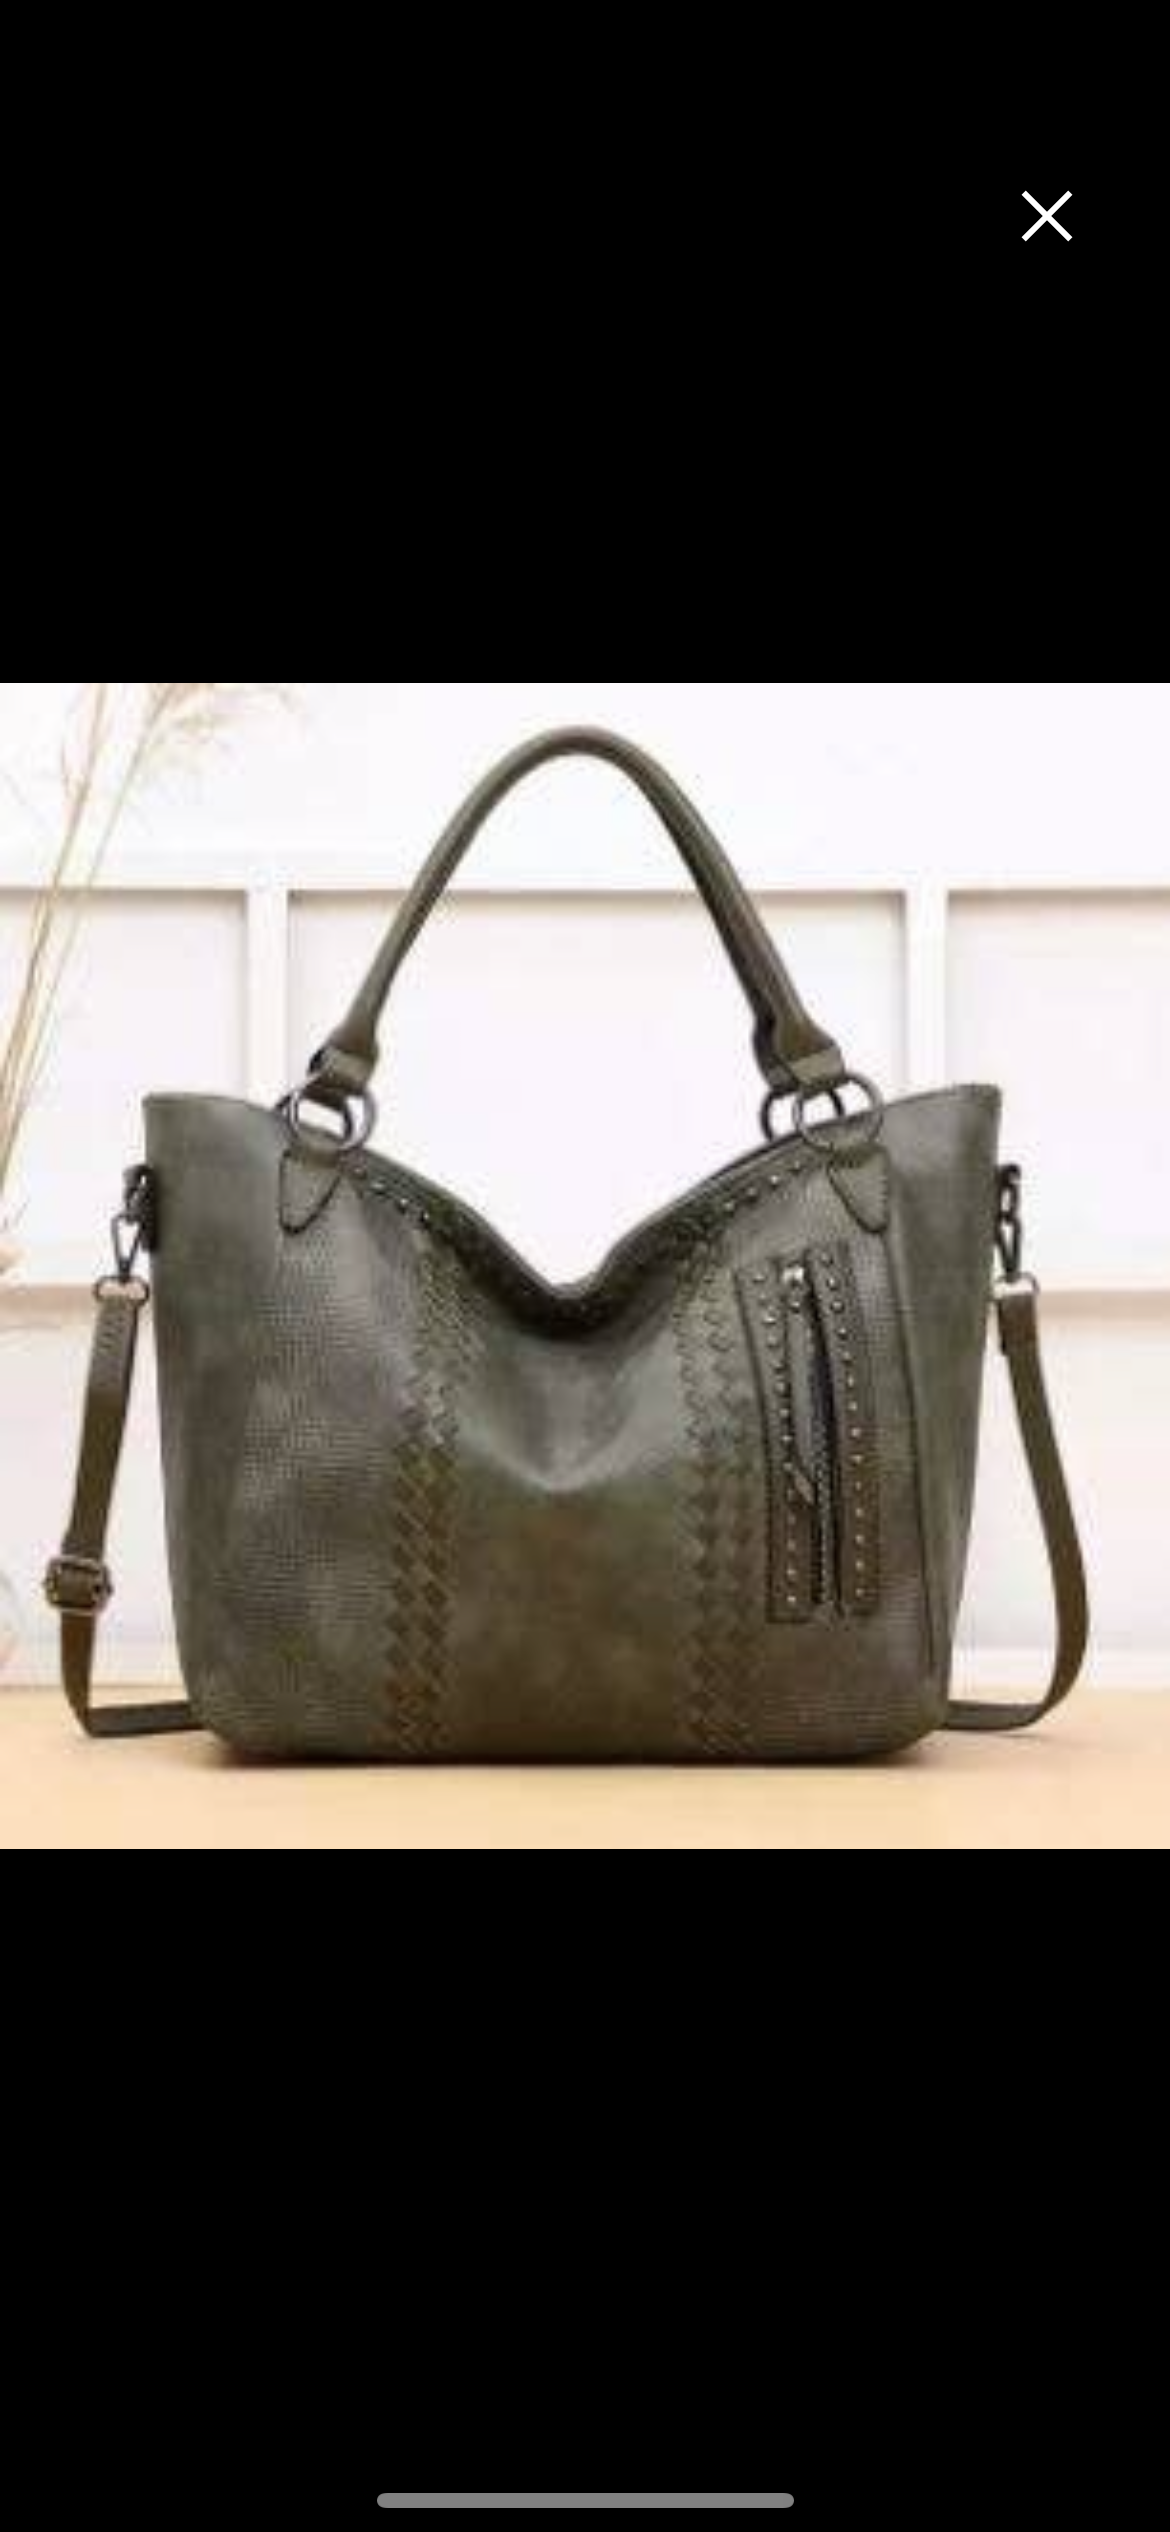 Studded handbag/tote